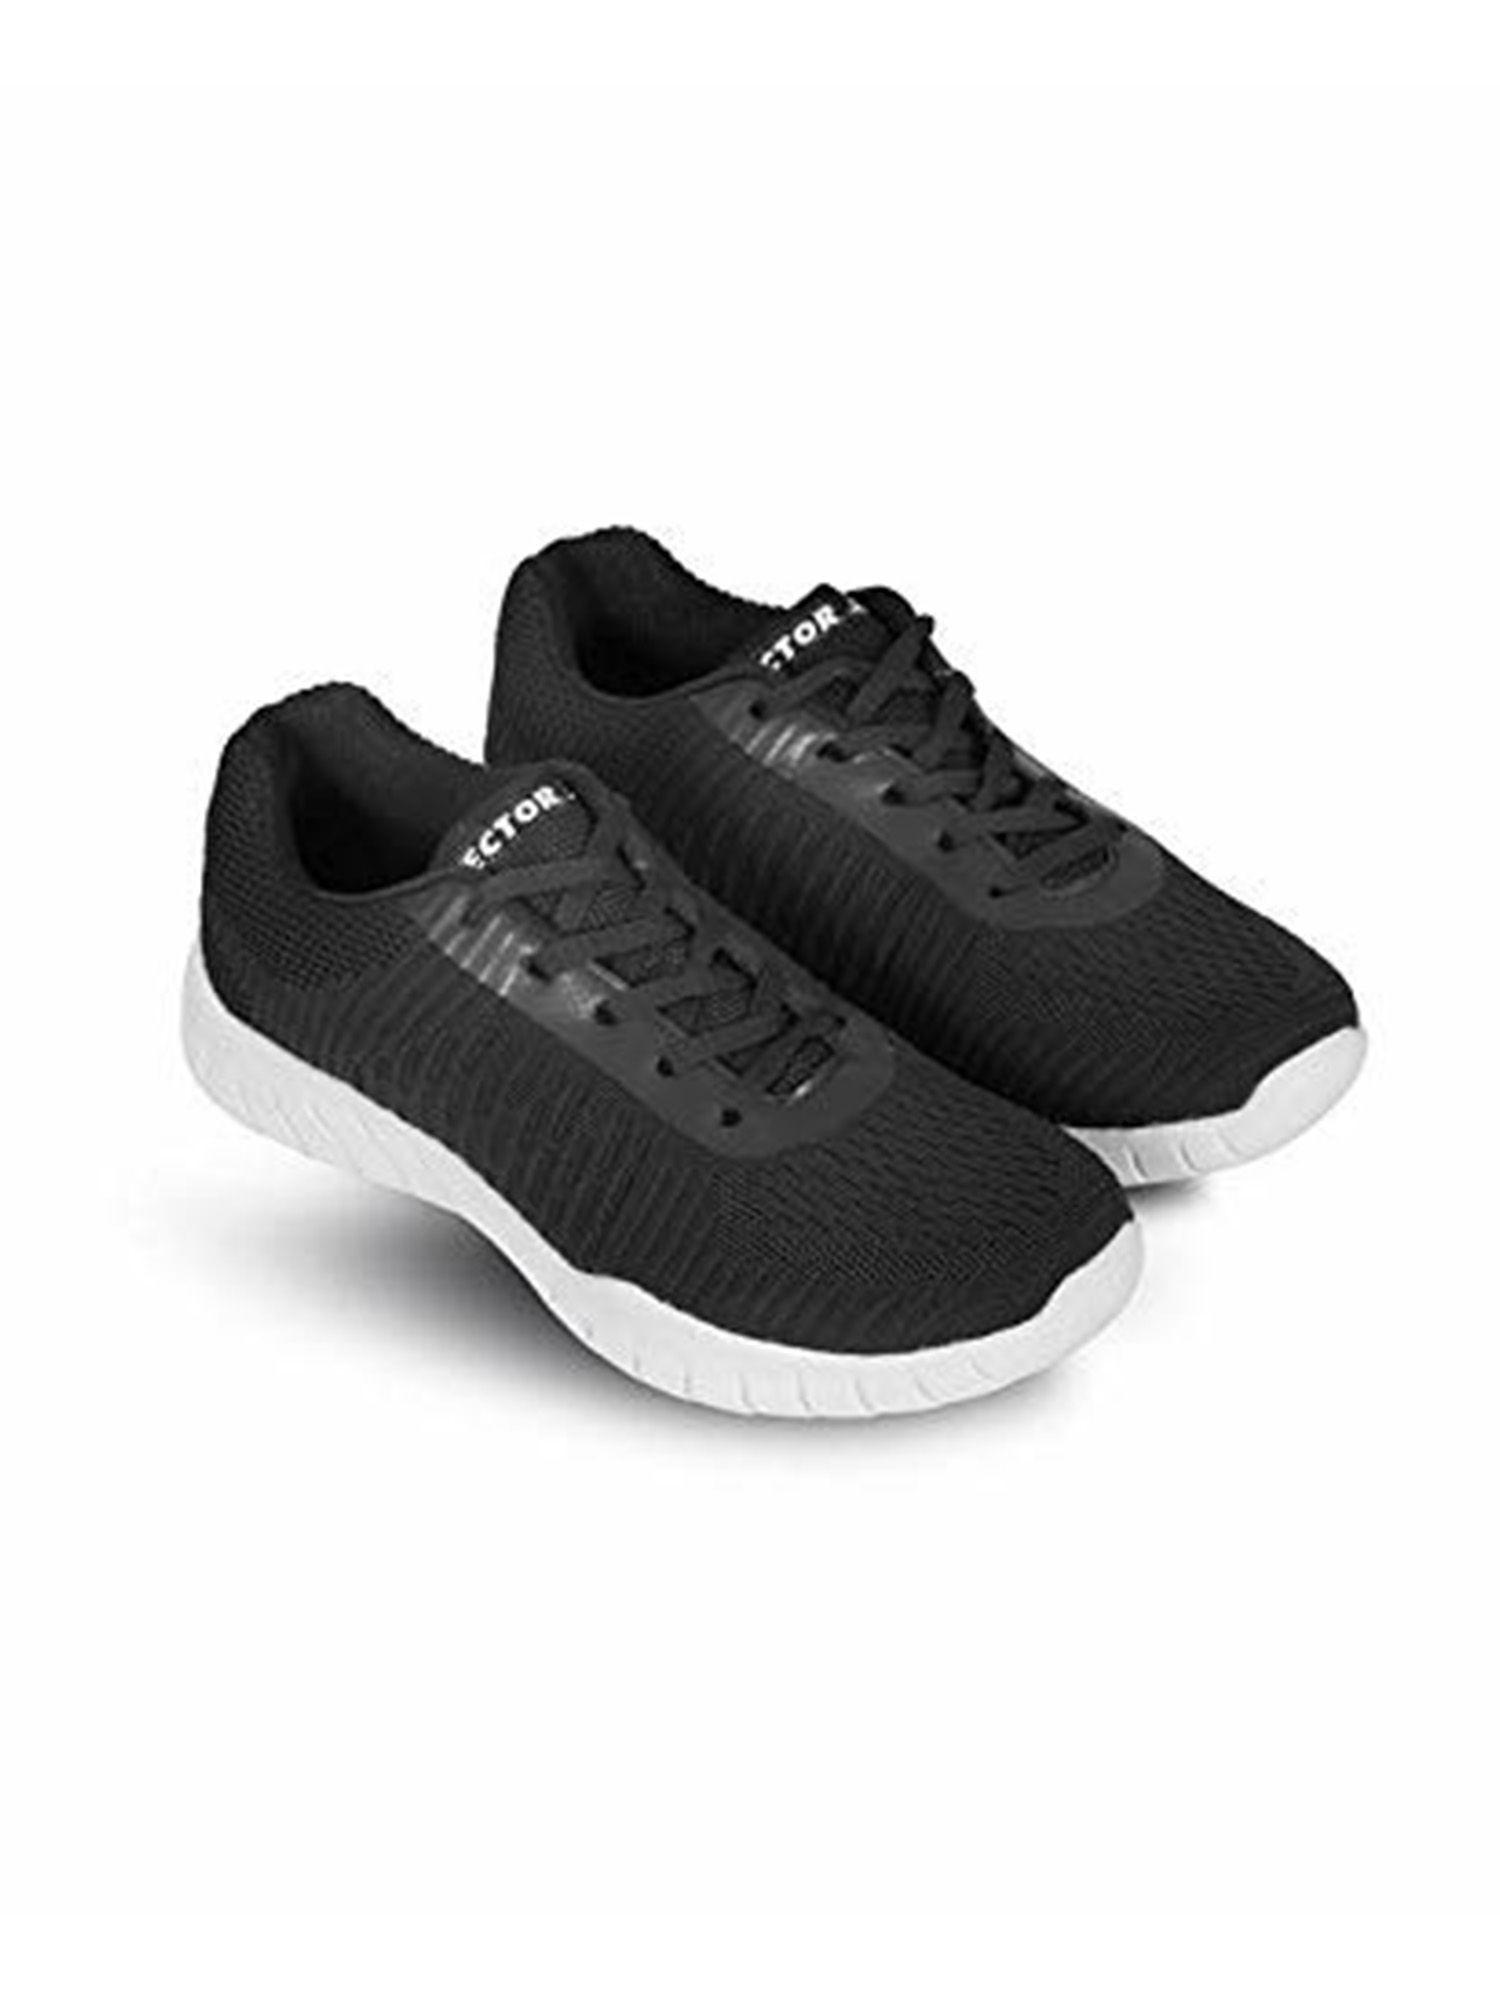 rs-7250-jogging-shoes-for-men-(black)